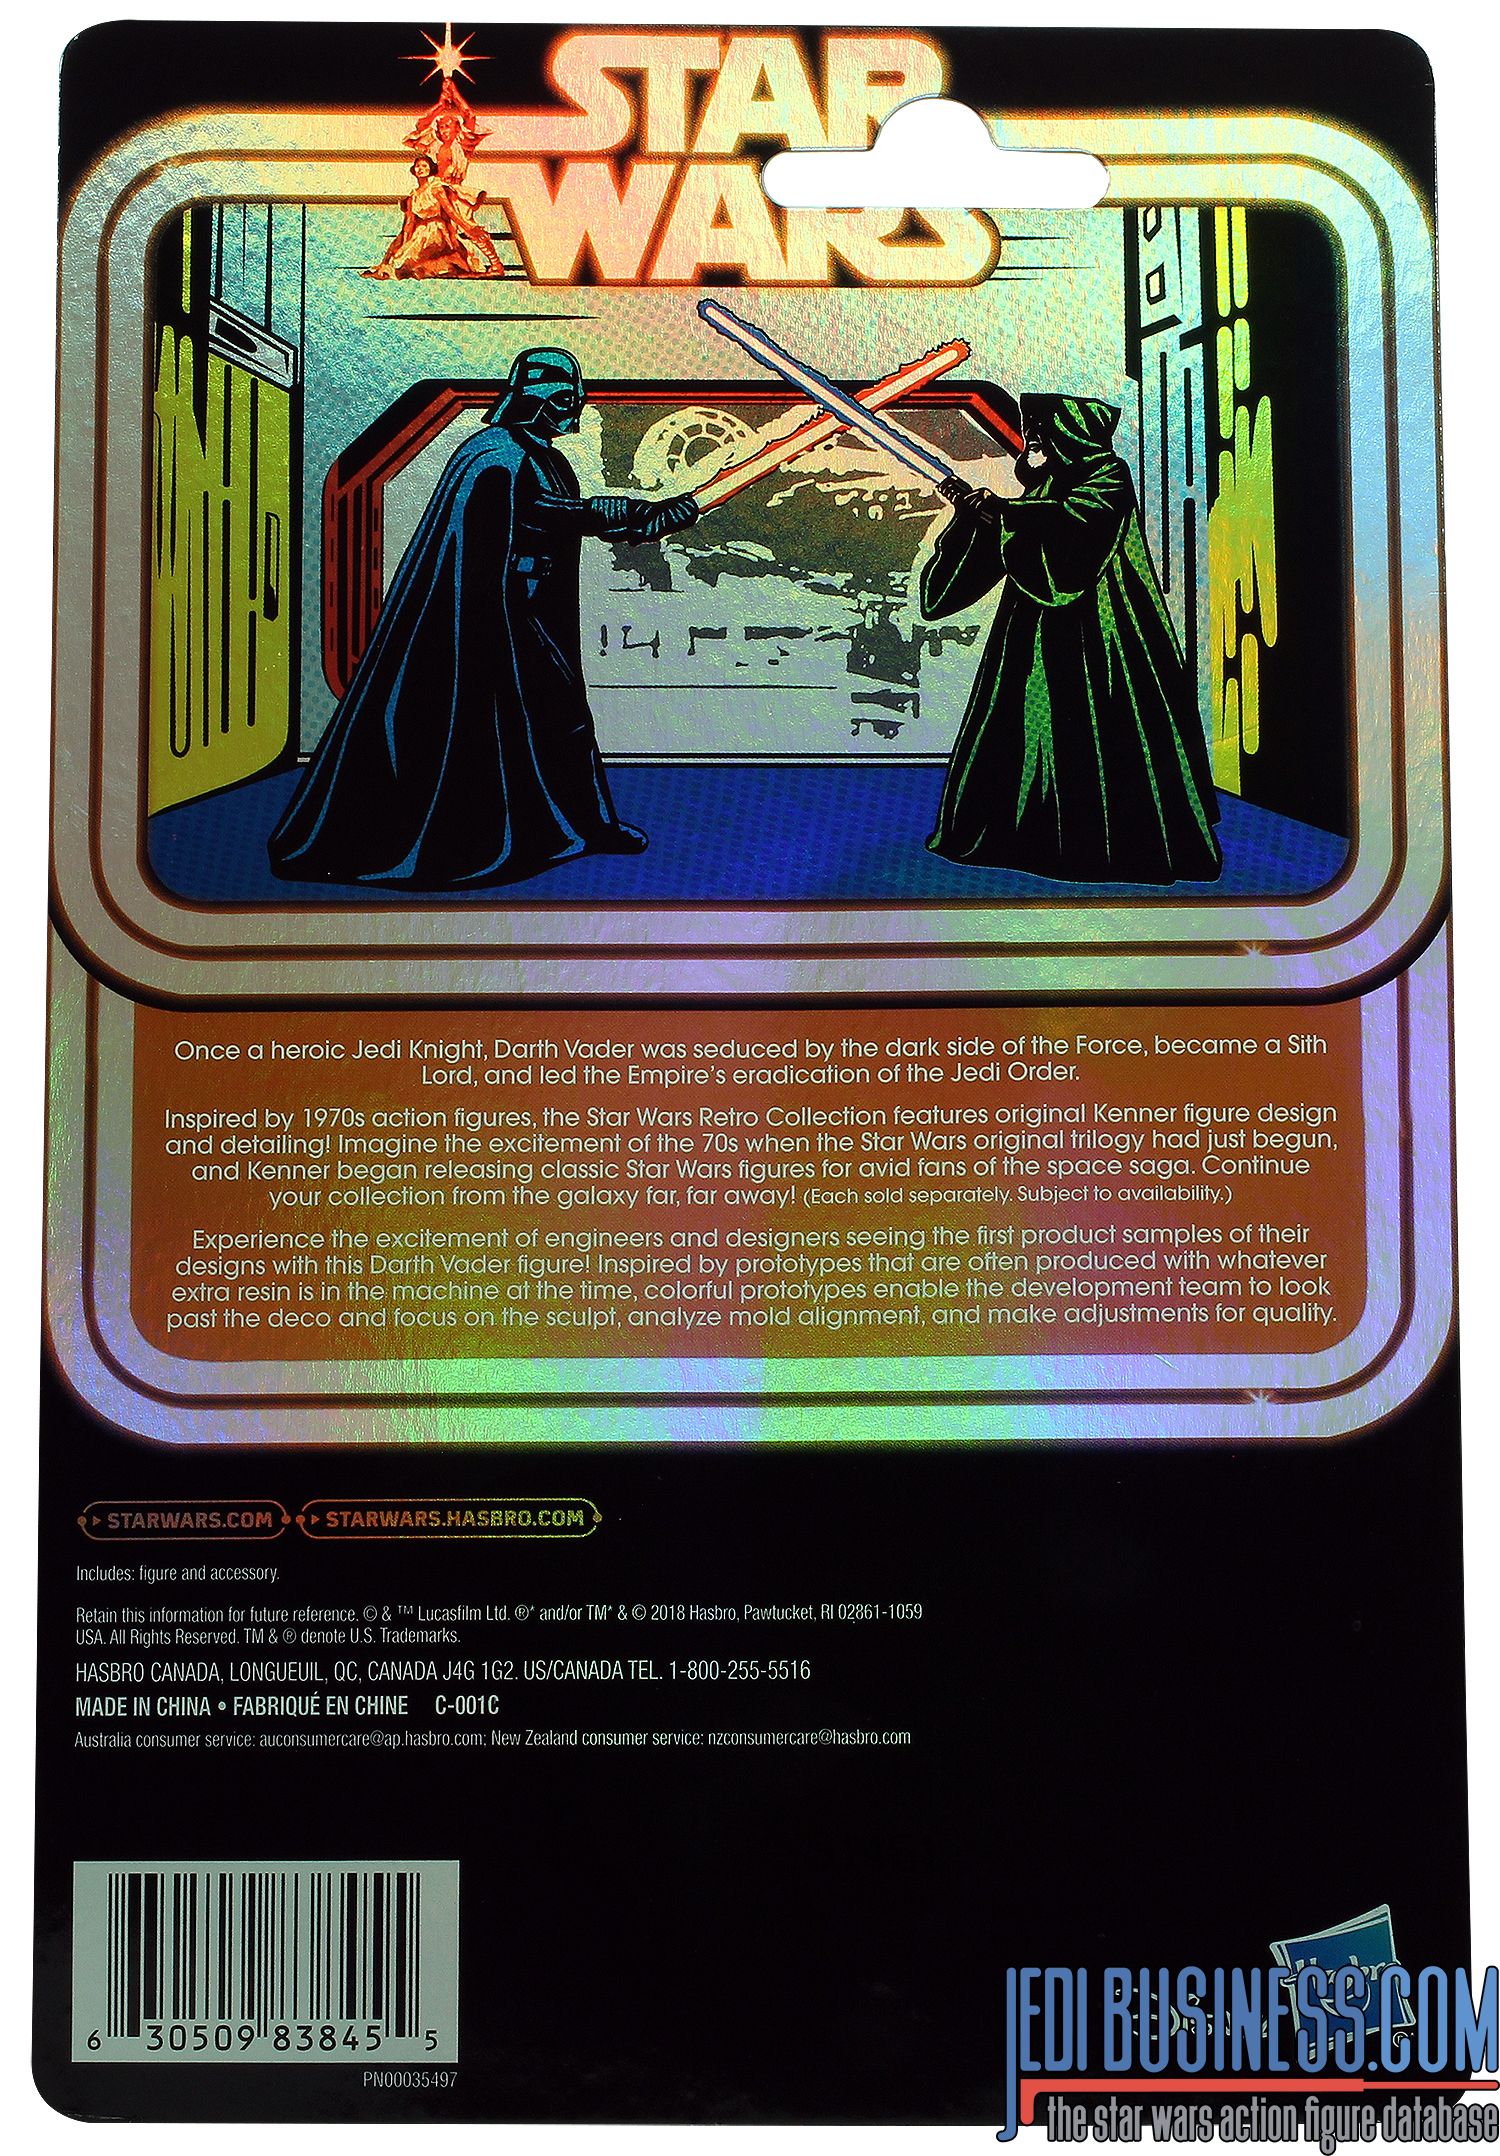 Darth Vader Prototype Edition